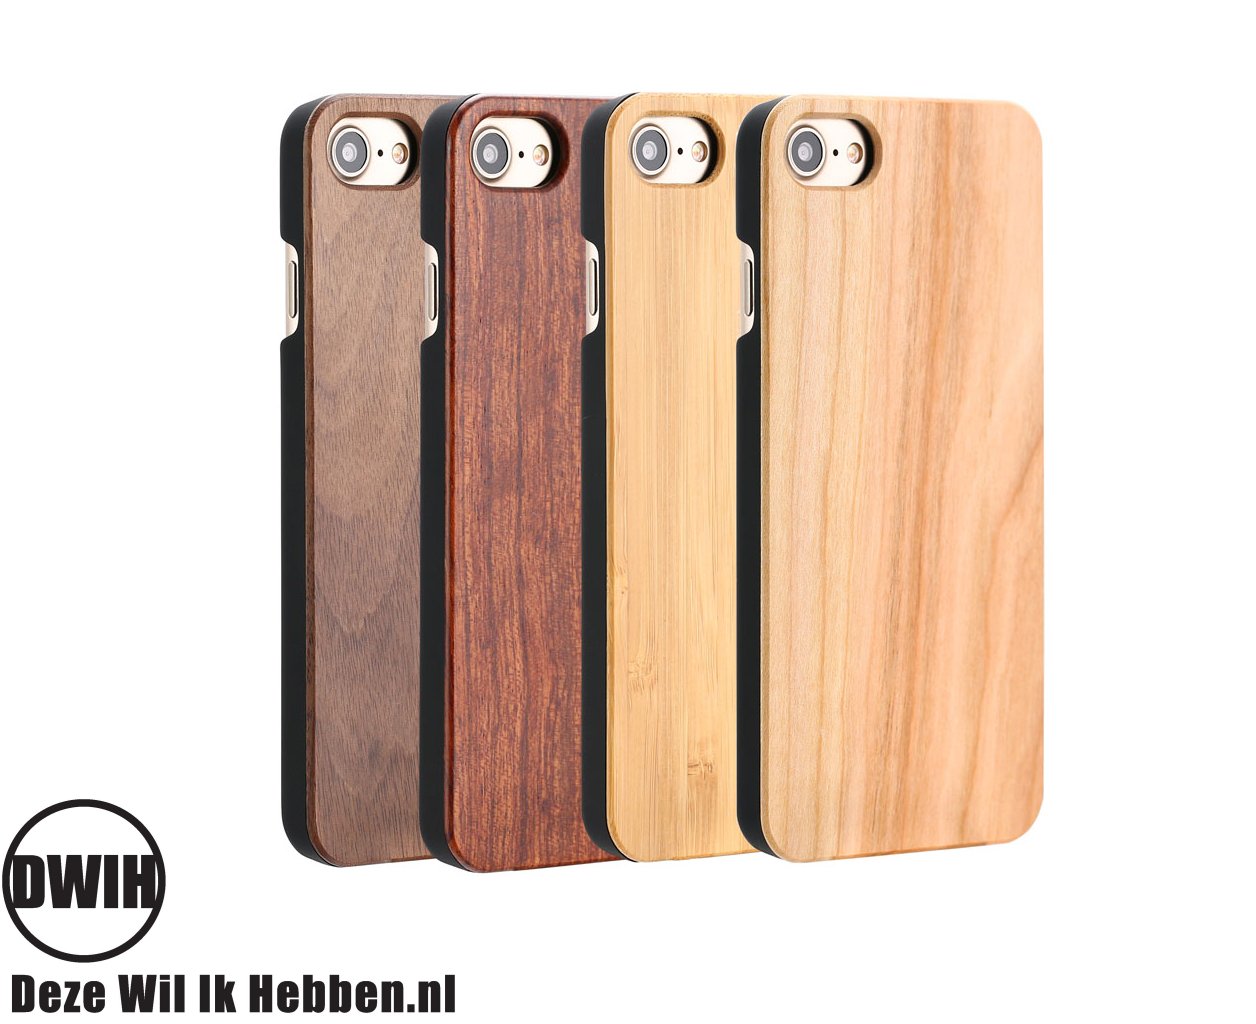 Gevoel van schuld Conventie kiem iPhone 7, 8 en SE 2020 houten case – Bamboo - Deze Wil Ik Hebben .nl